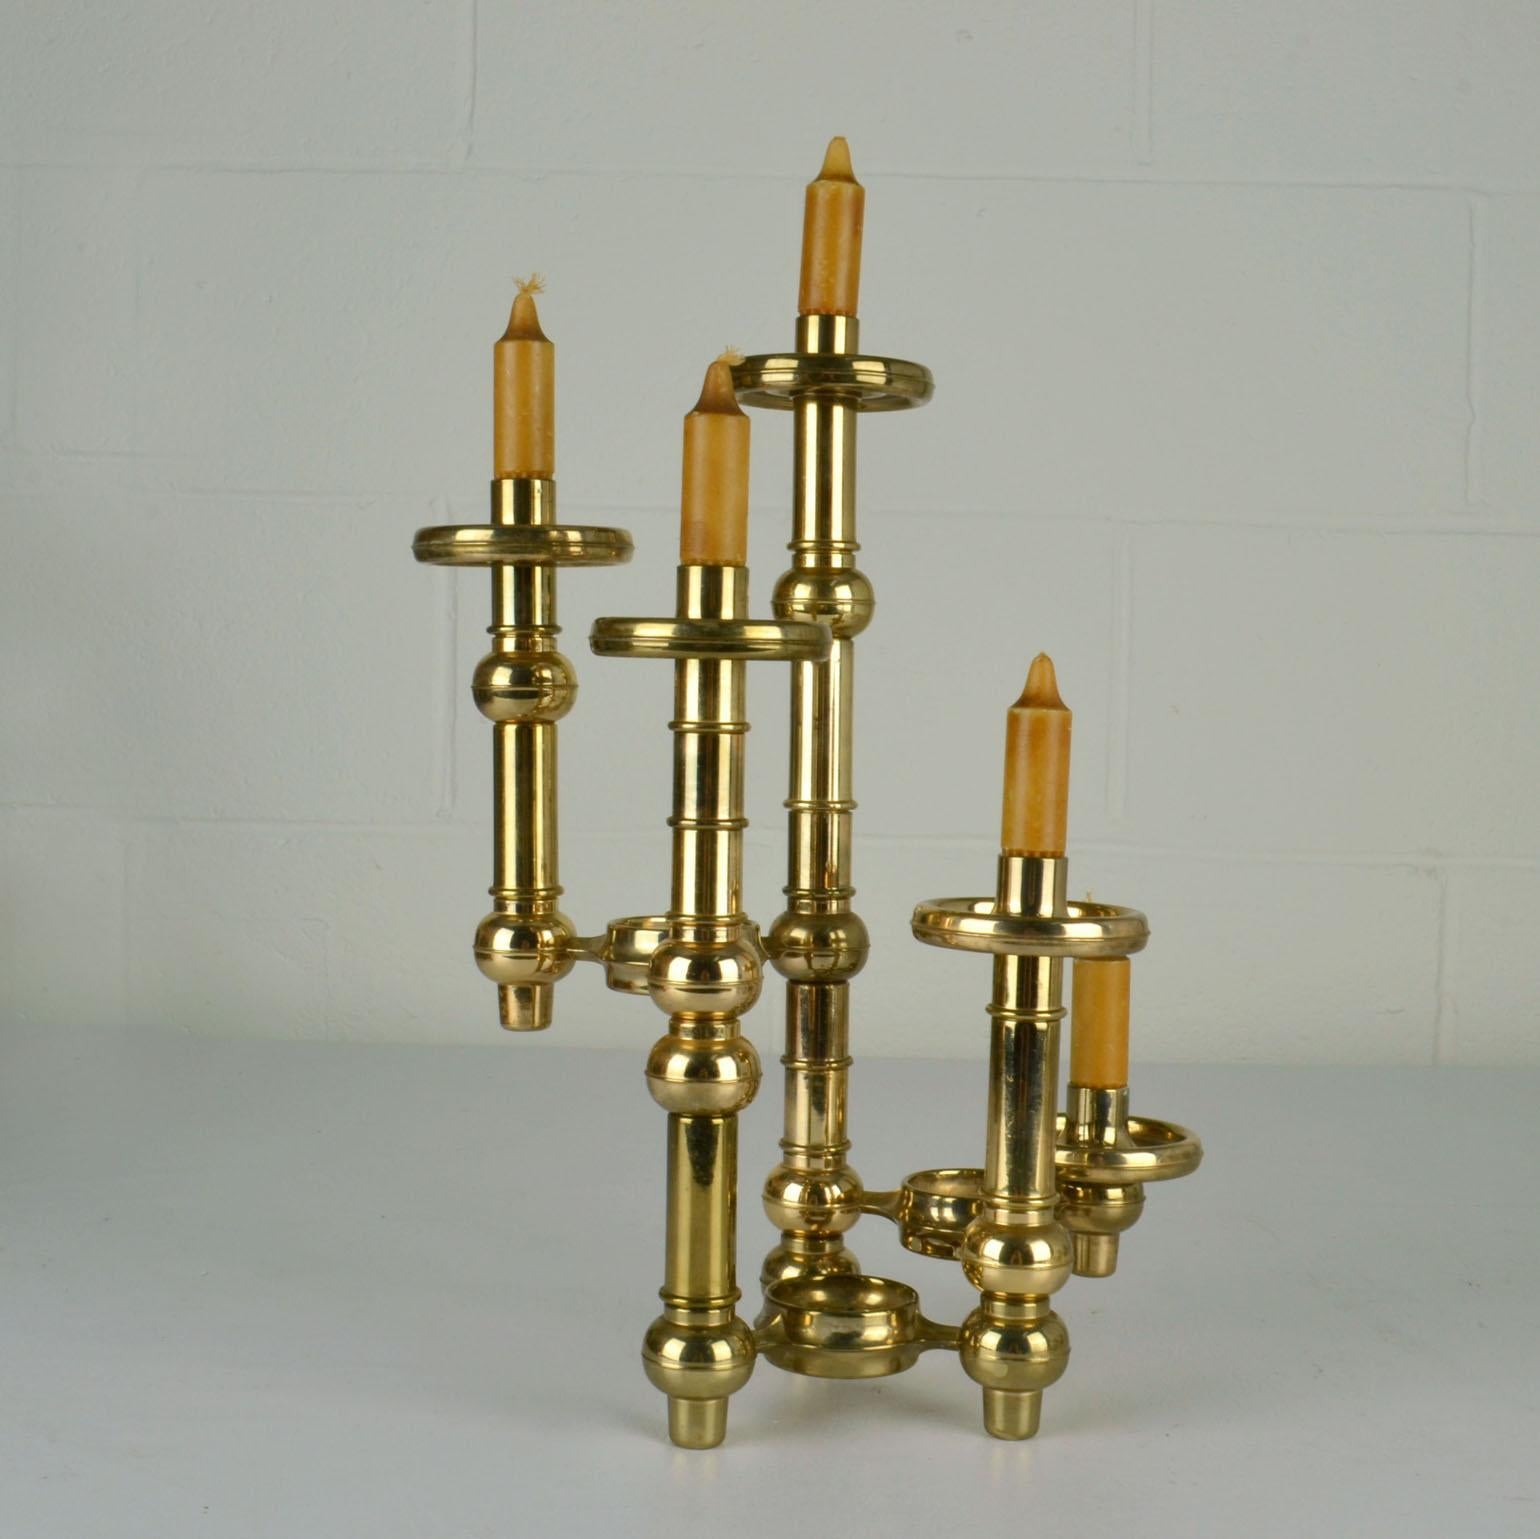 Scandinavian Modern Modular Brass Candelabra with Glass Shades For Sale 6